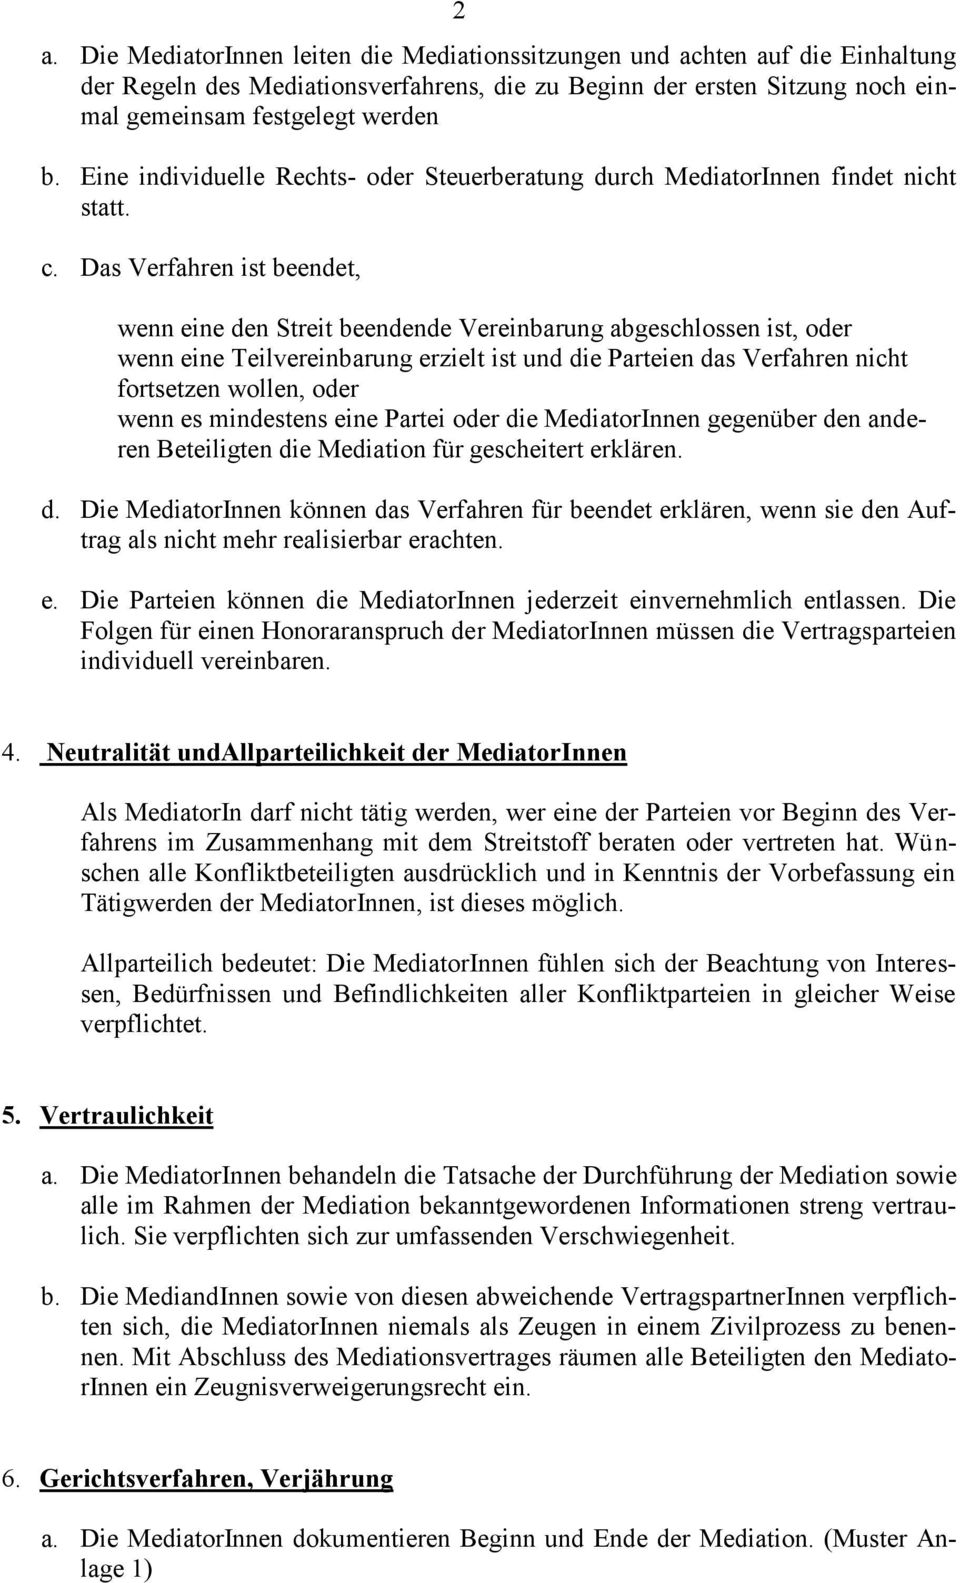 Mediationsordnung Des Bundesverbandes Mediation E V Pdf Free Download